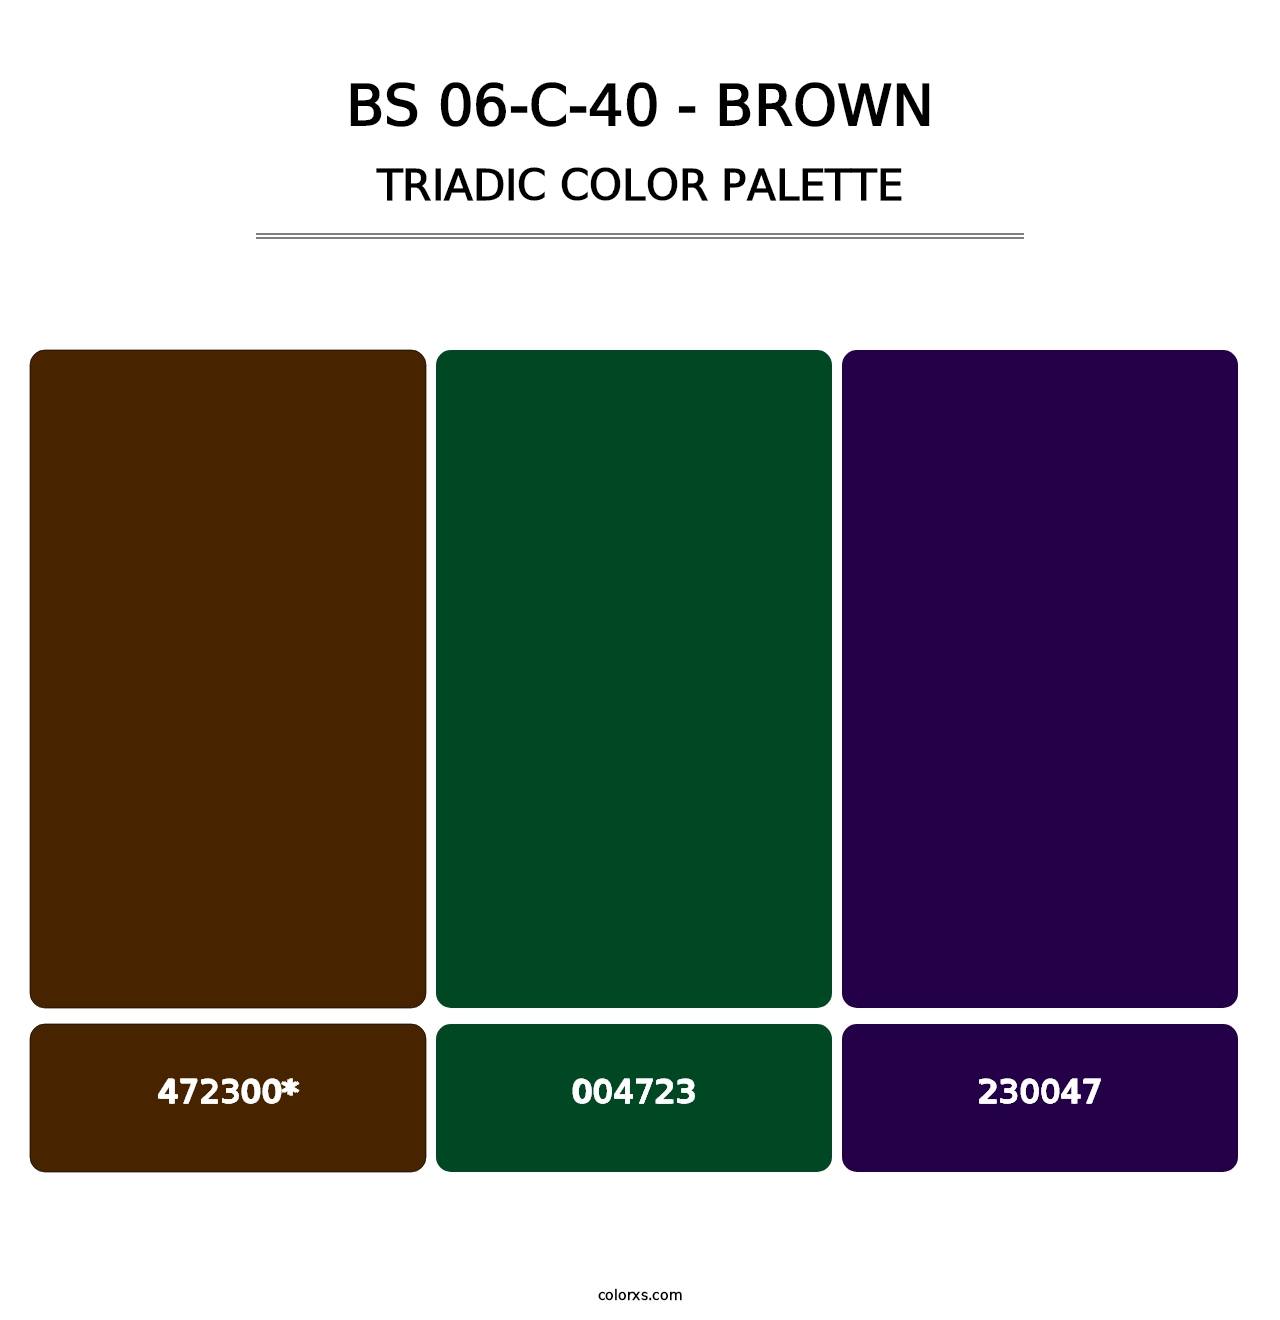 BS 06-C-40 - Brown - Triadic Color Palette